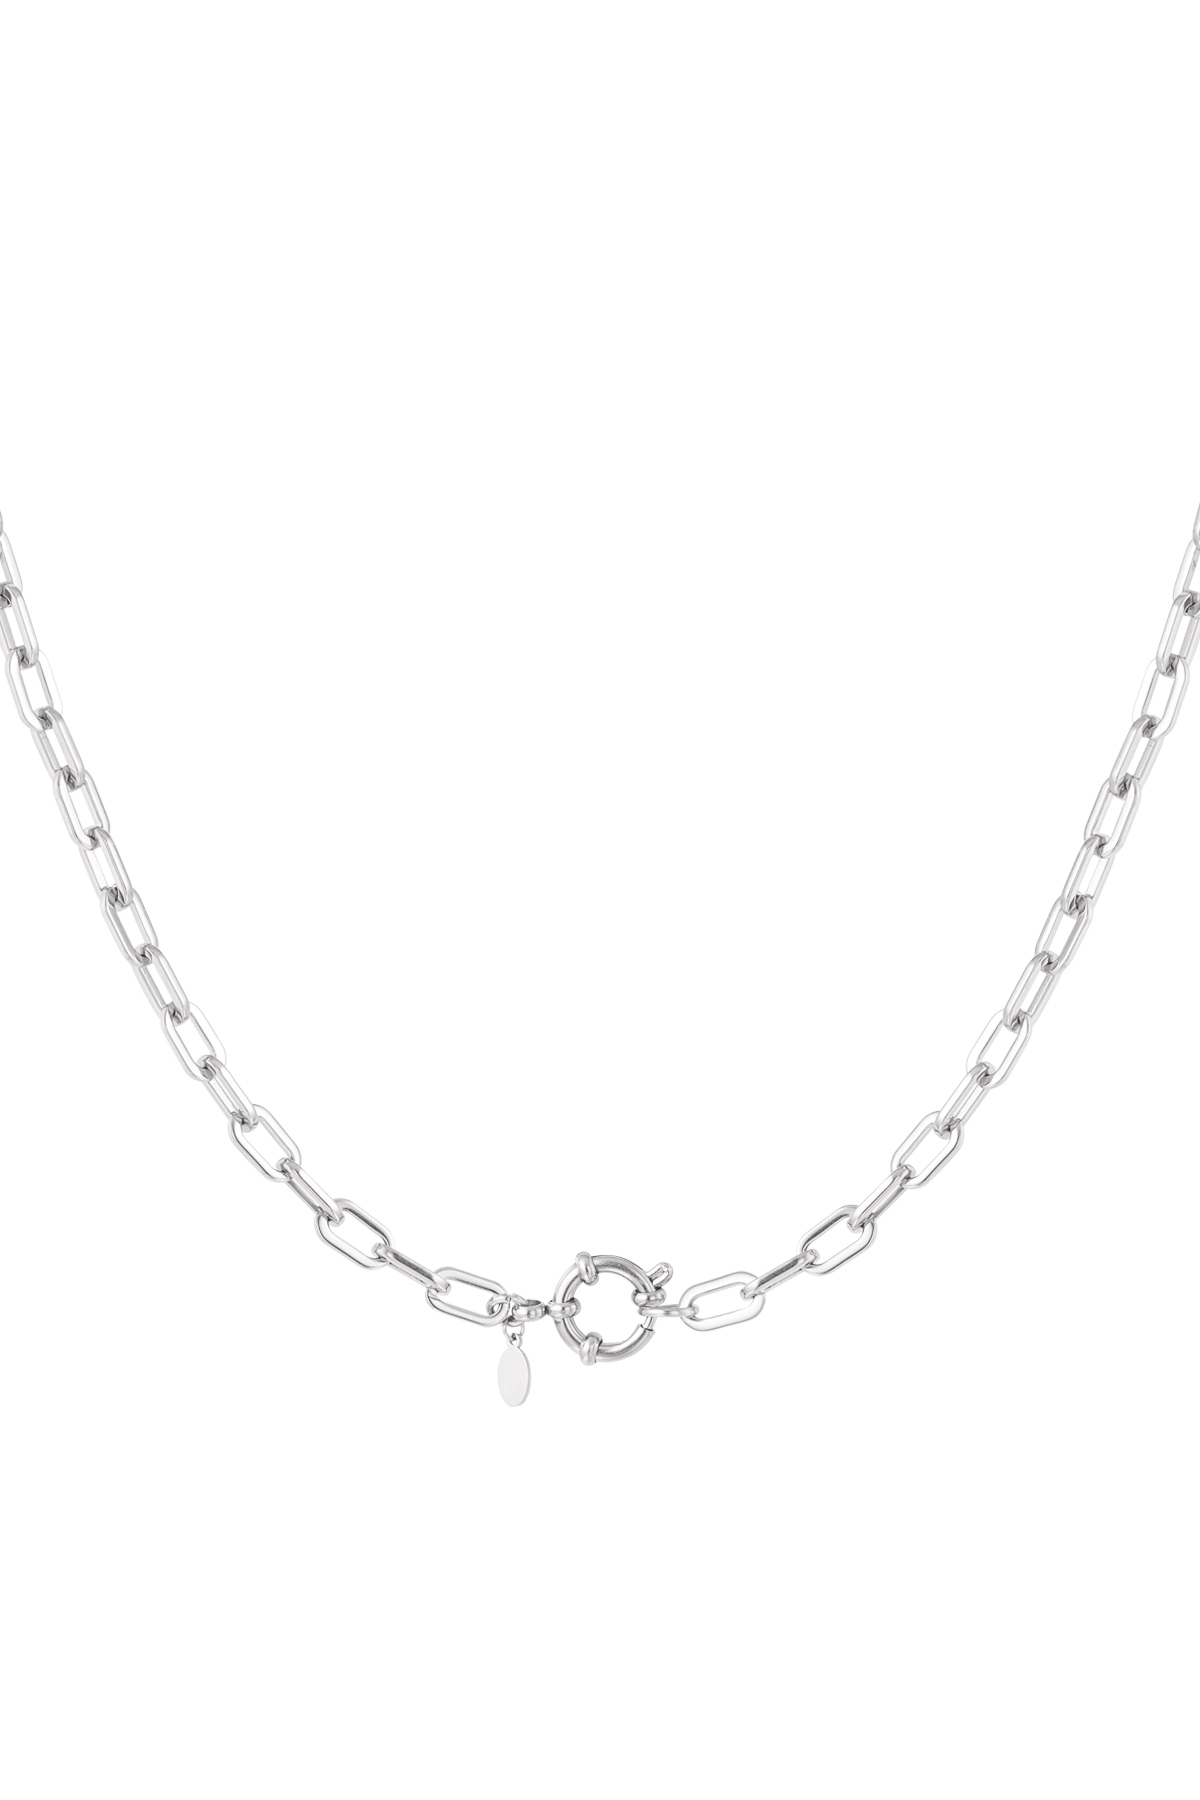 Halskette mit einfachen Gliedern und rundem Verschluss – Silber h5 